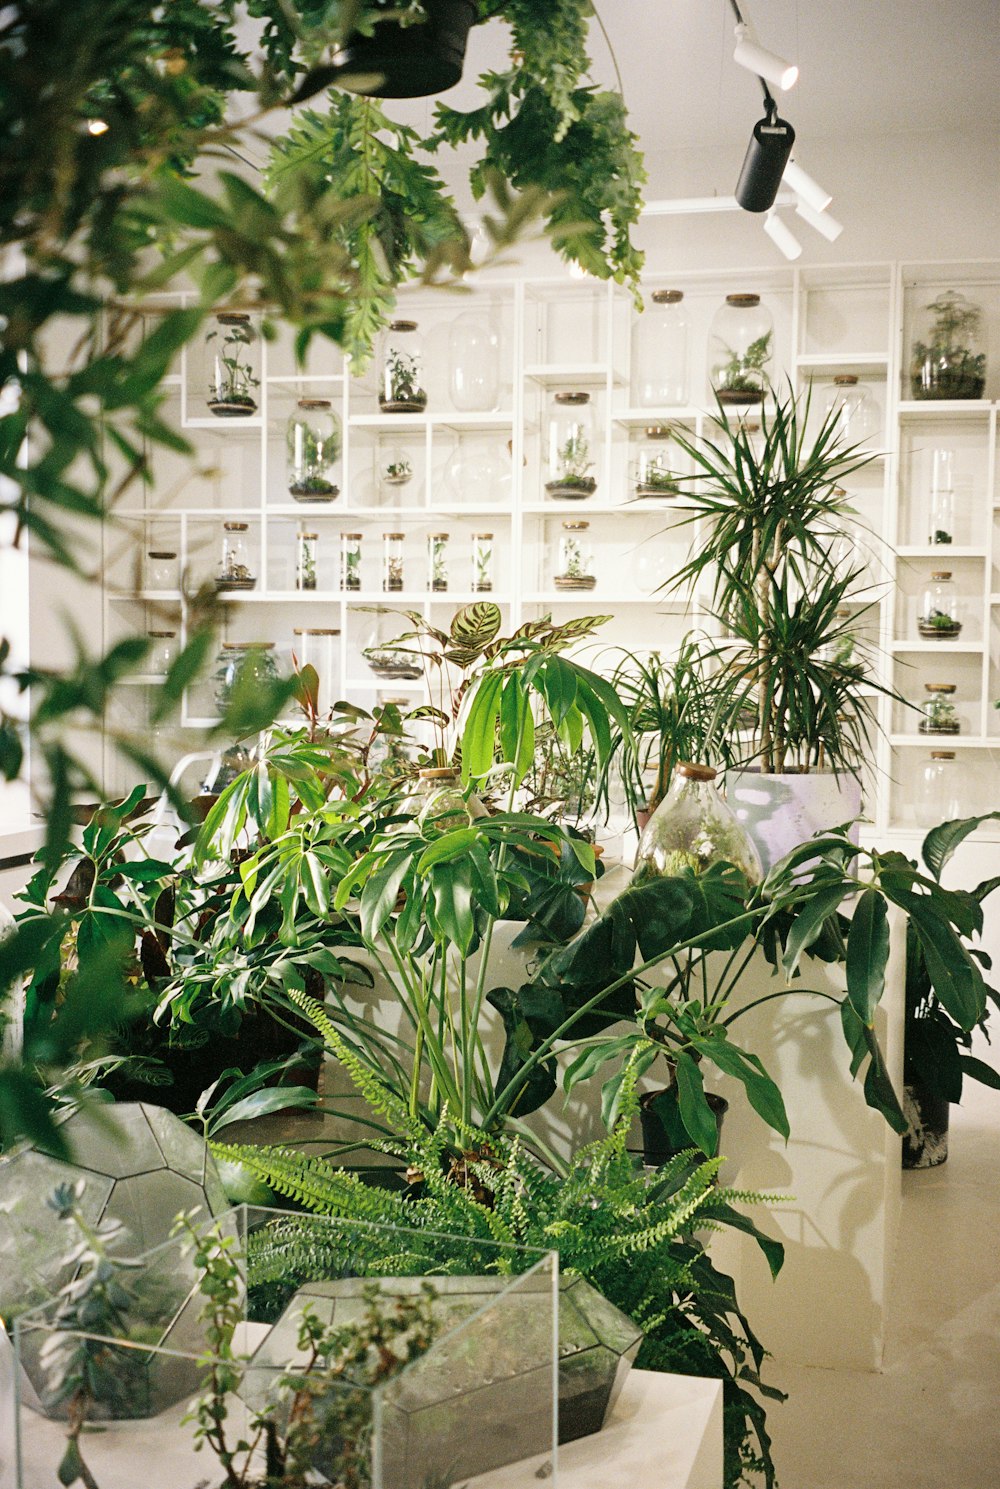 다양한 종류의 식물로 가득 찬 방